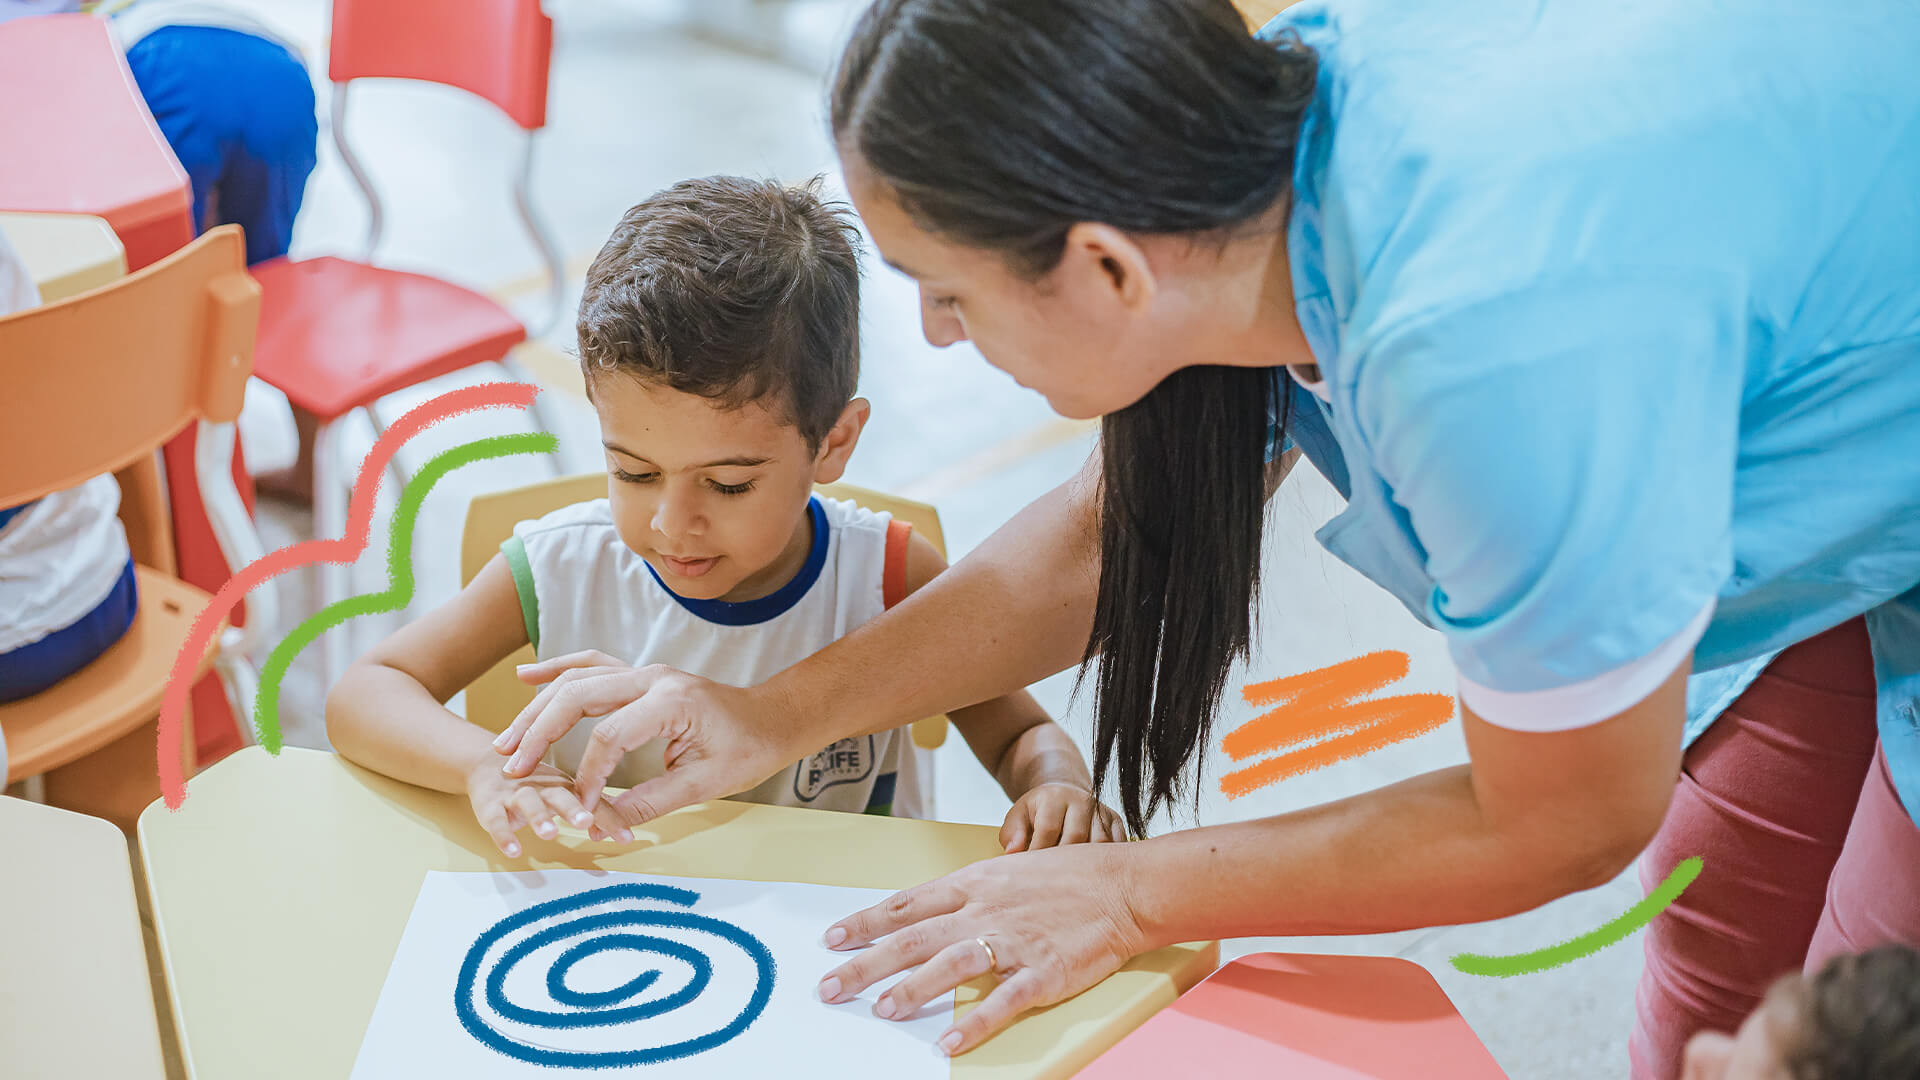 Educação infantil de qualidade:fiti de menino está sentado em frente a uma carteira sendo instruído por uma mulher (professora), desenhando um espiral num papel.